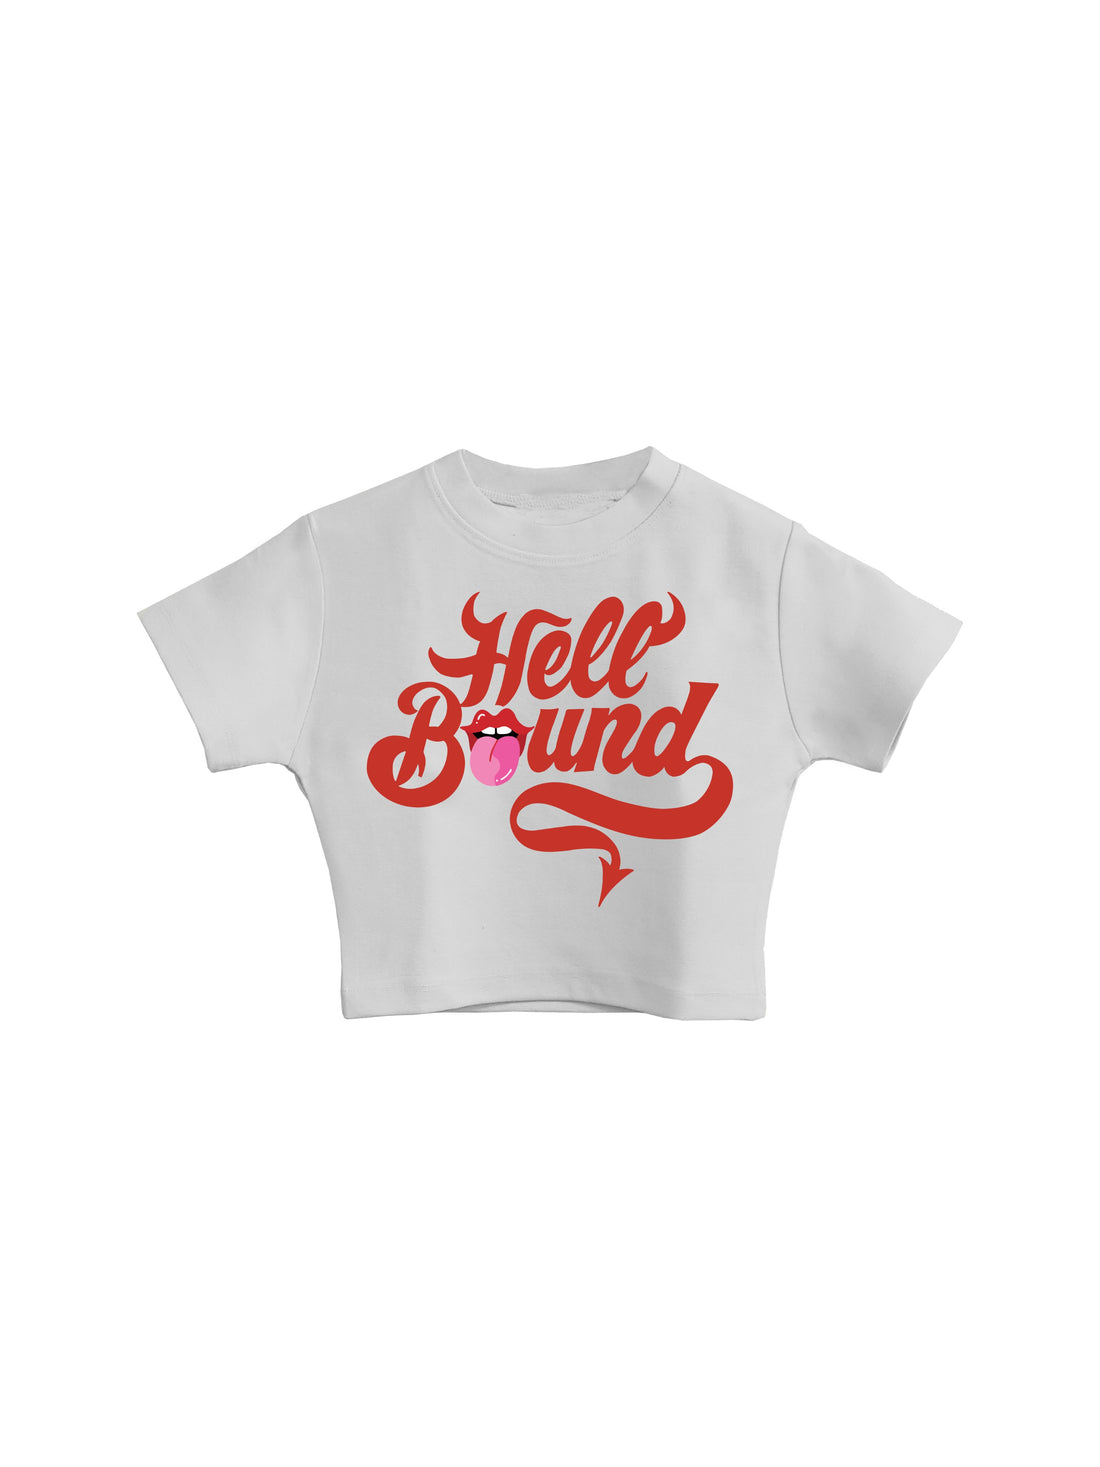 Hell Bound - Burger Bae Round Neck Crop Baby Tee For Women